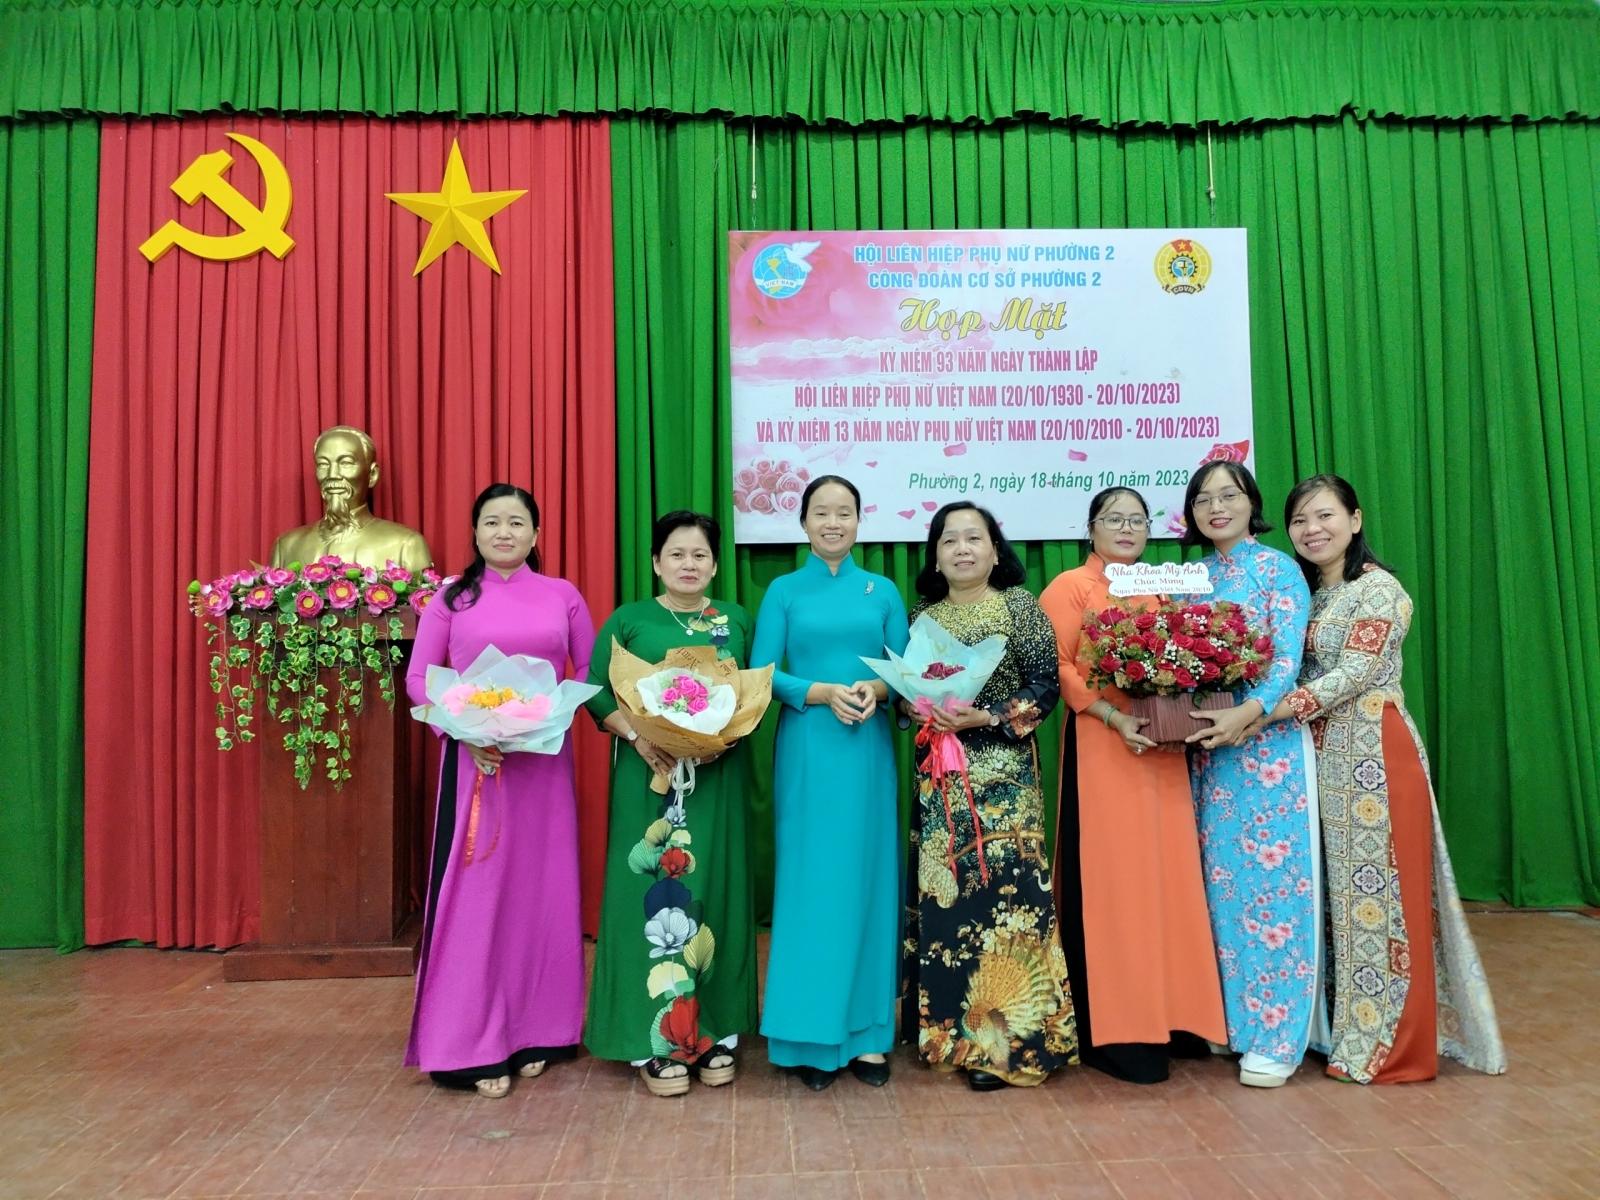 Hội LHPN Phường 2 họp mặt kỷ niệm 93 năm Ngày thành lập Hội Liên hiệp phụ nữ Việt Nam  (20/10/1930 – 20/10/2023) và 13 năm Ngày Phụ Nữ Việt Nam (20/10/2010 -20/10/2023)